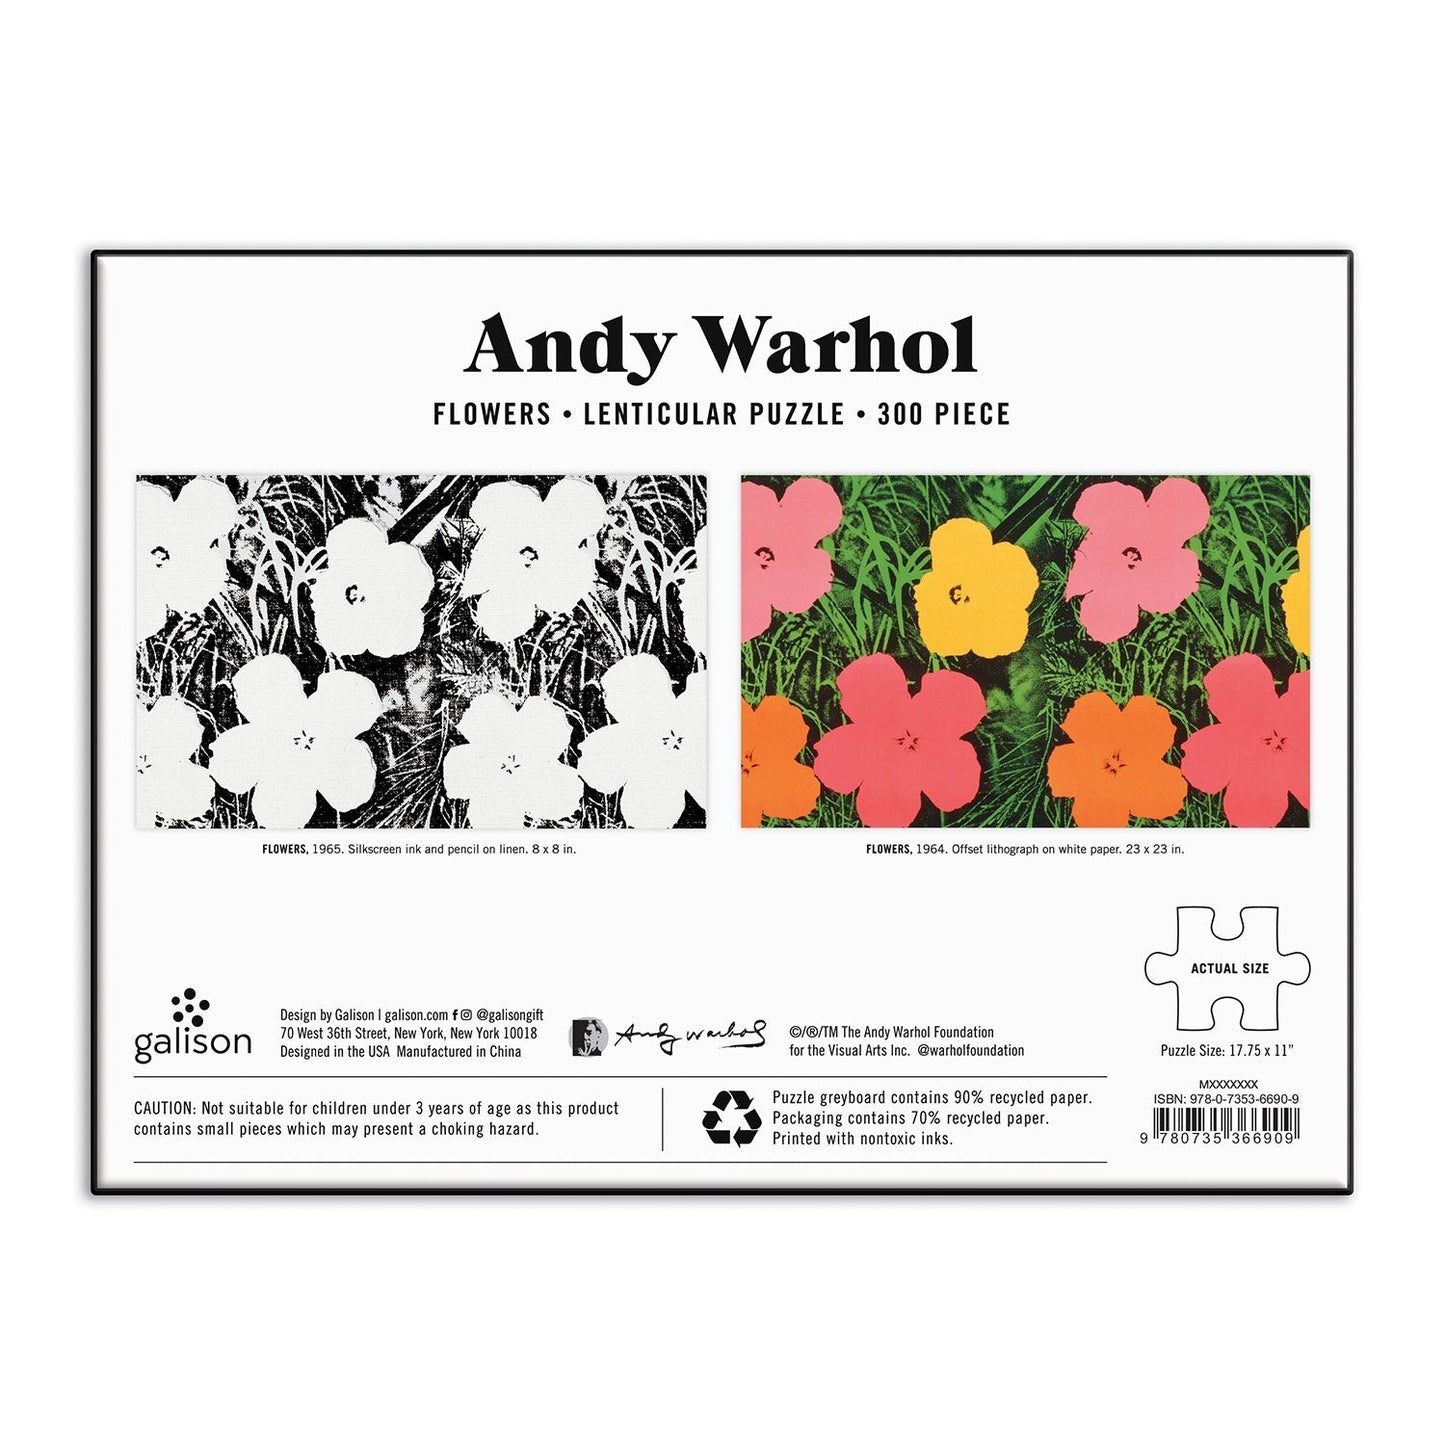 Rompecabezas lenticular de 300 piezas con flores de Andy Warhol